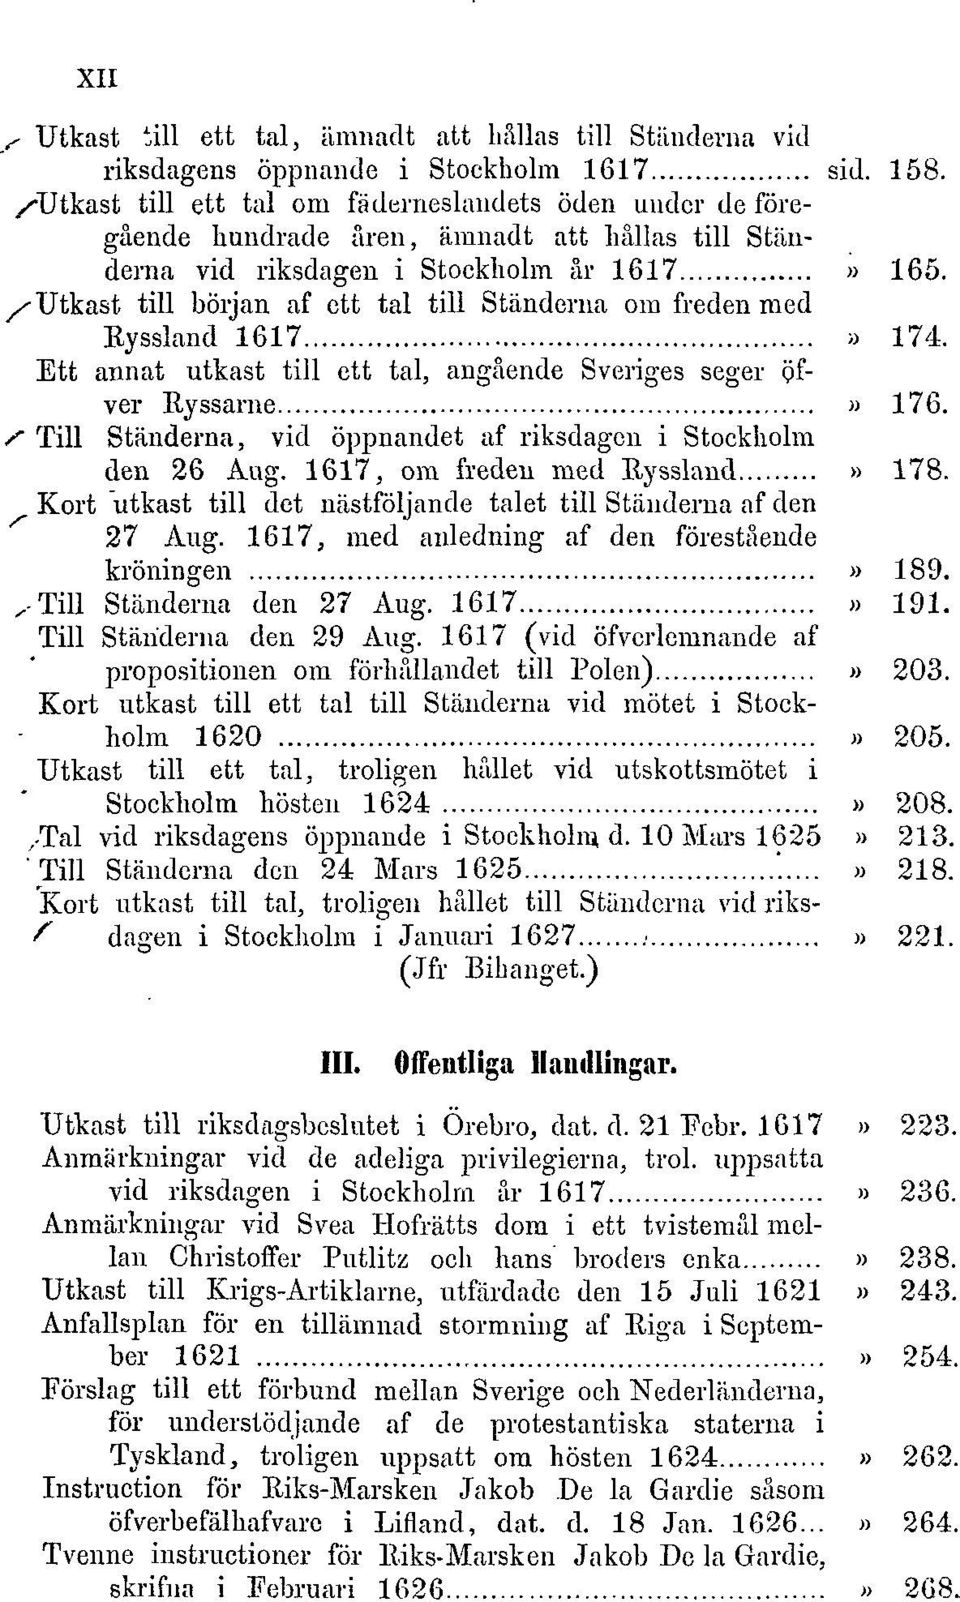 /'Utkast till början af ett tal till Ständerna om freden med Ryssland 1617» 174. Ett annat utkast till ett tal, angående Sveriges seger gfver Ryssarne» 176.